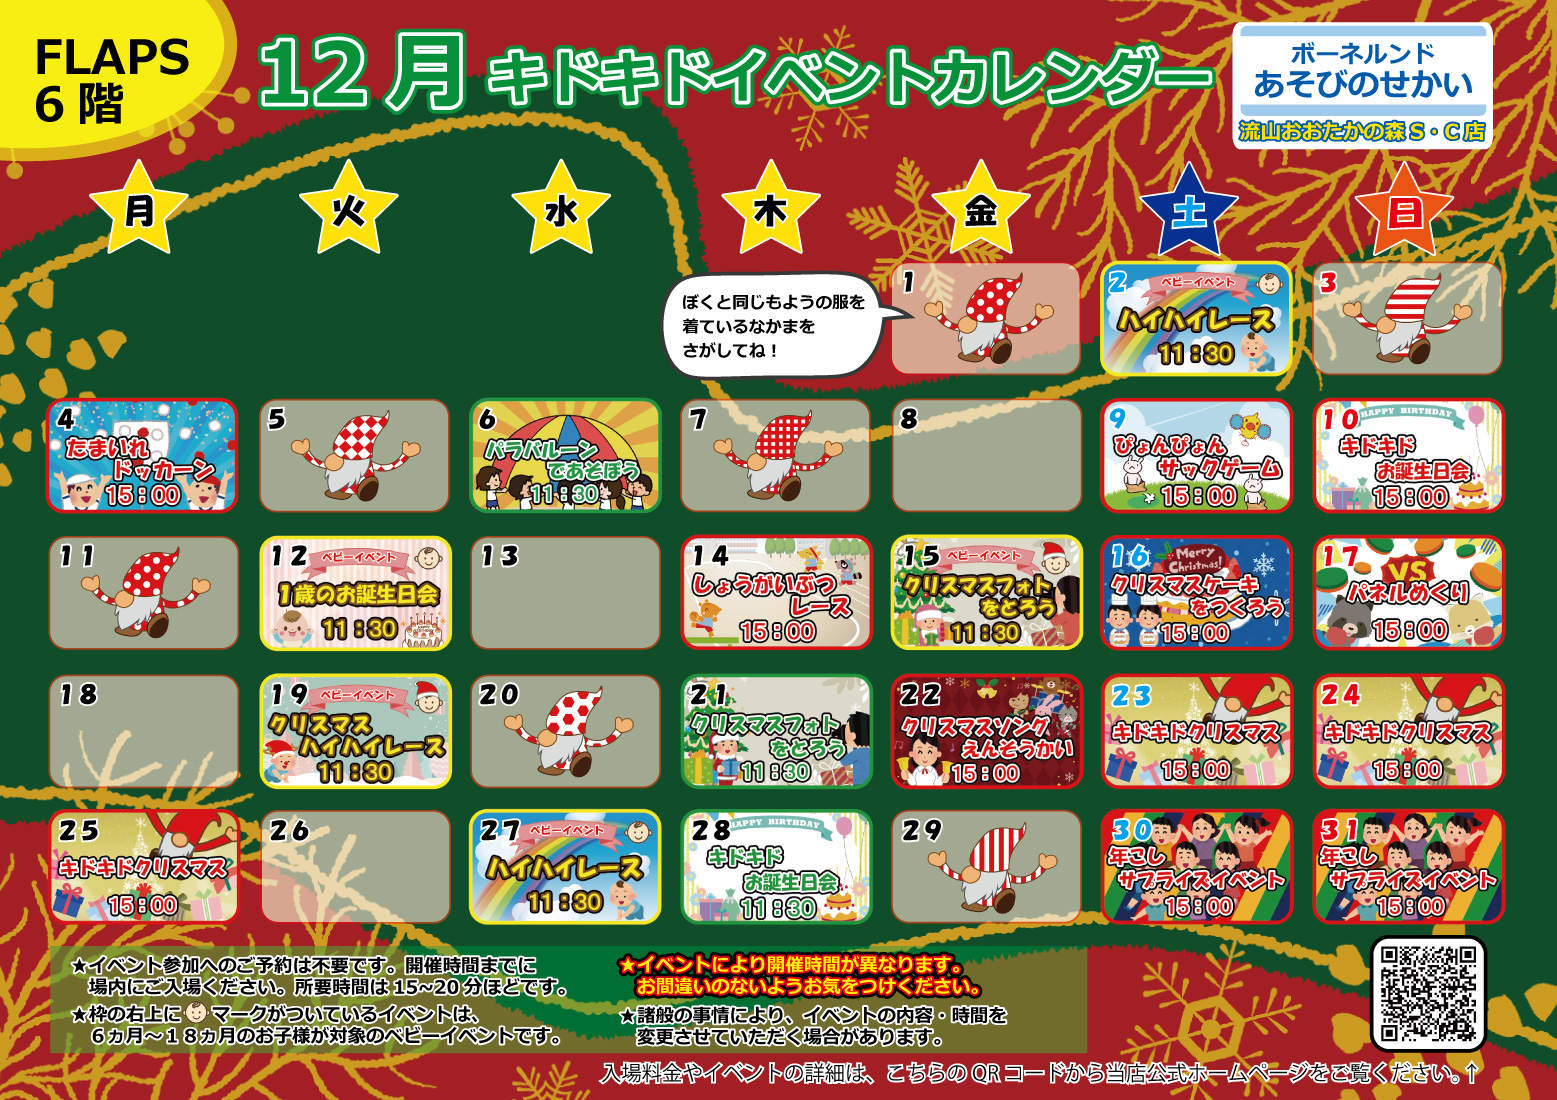 ★12月のイベントカレンダー★